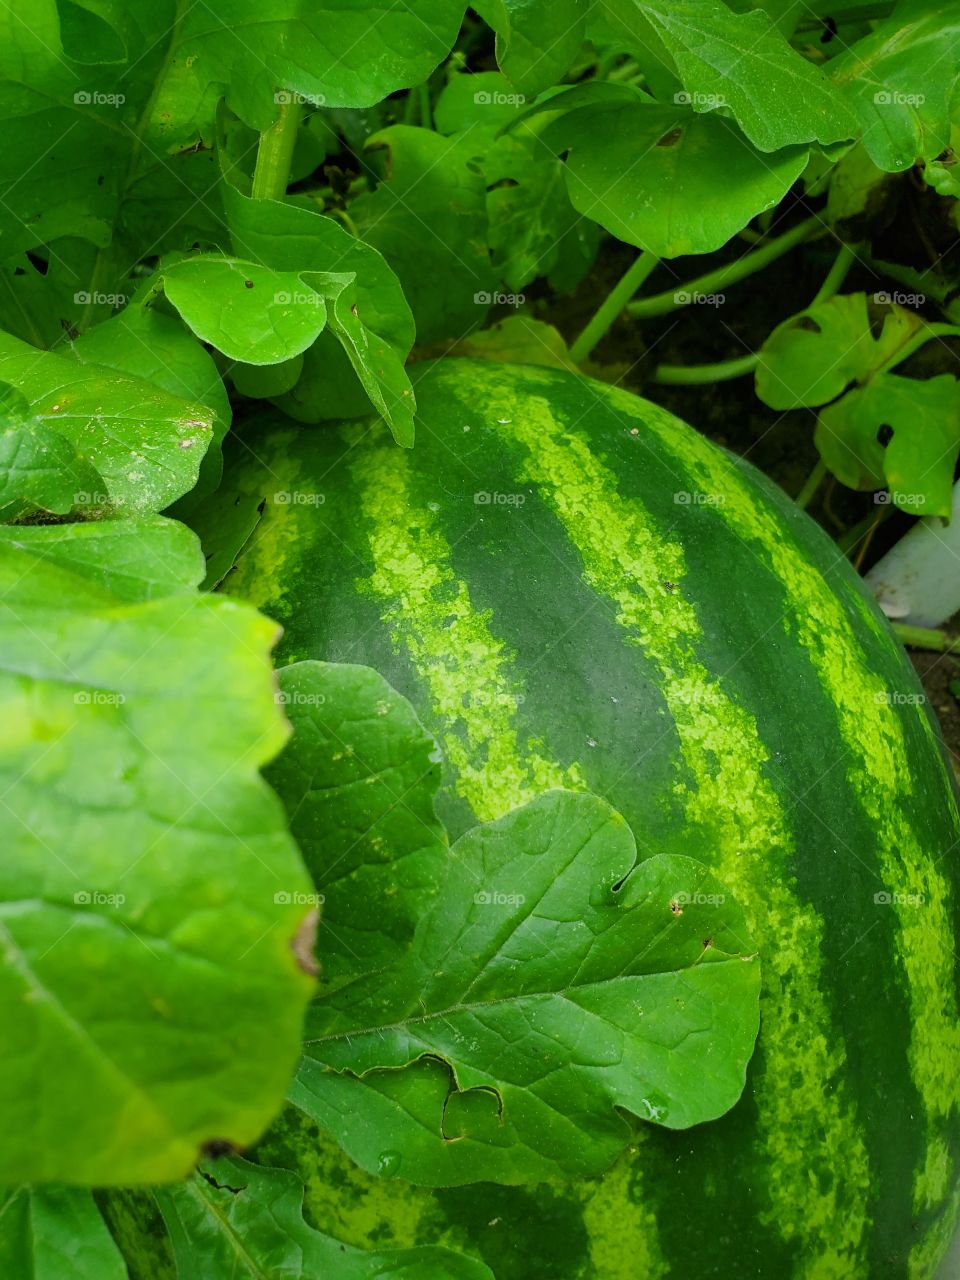 watermelon in garden